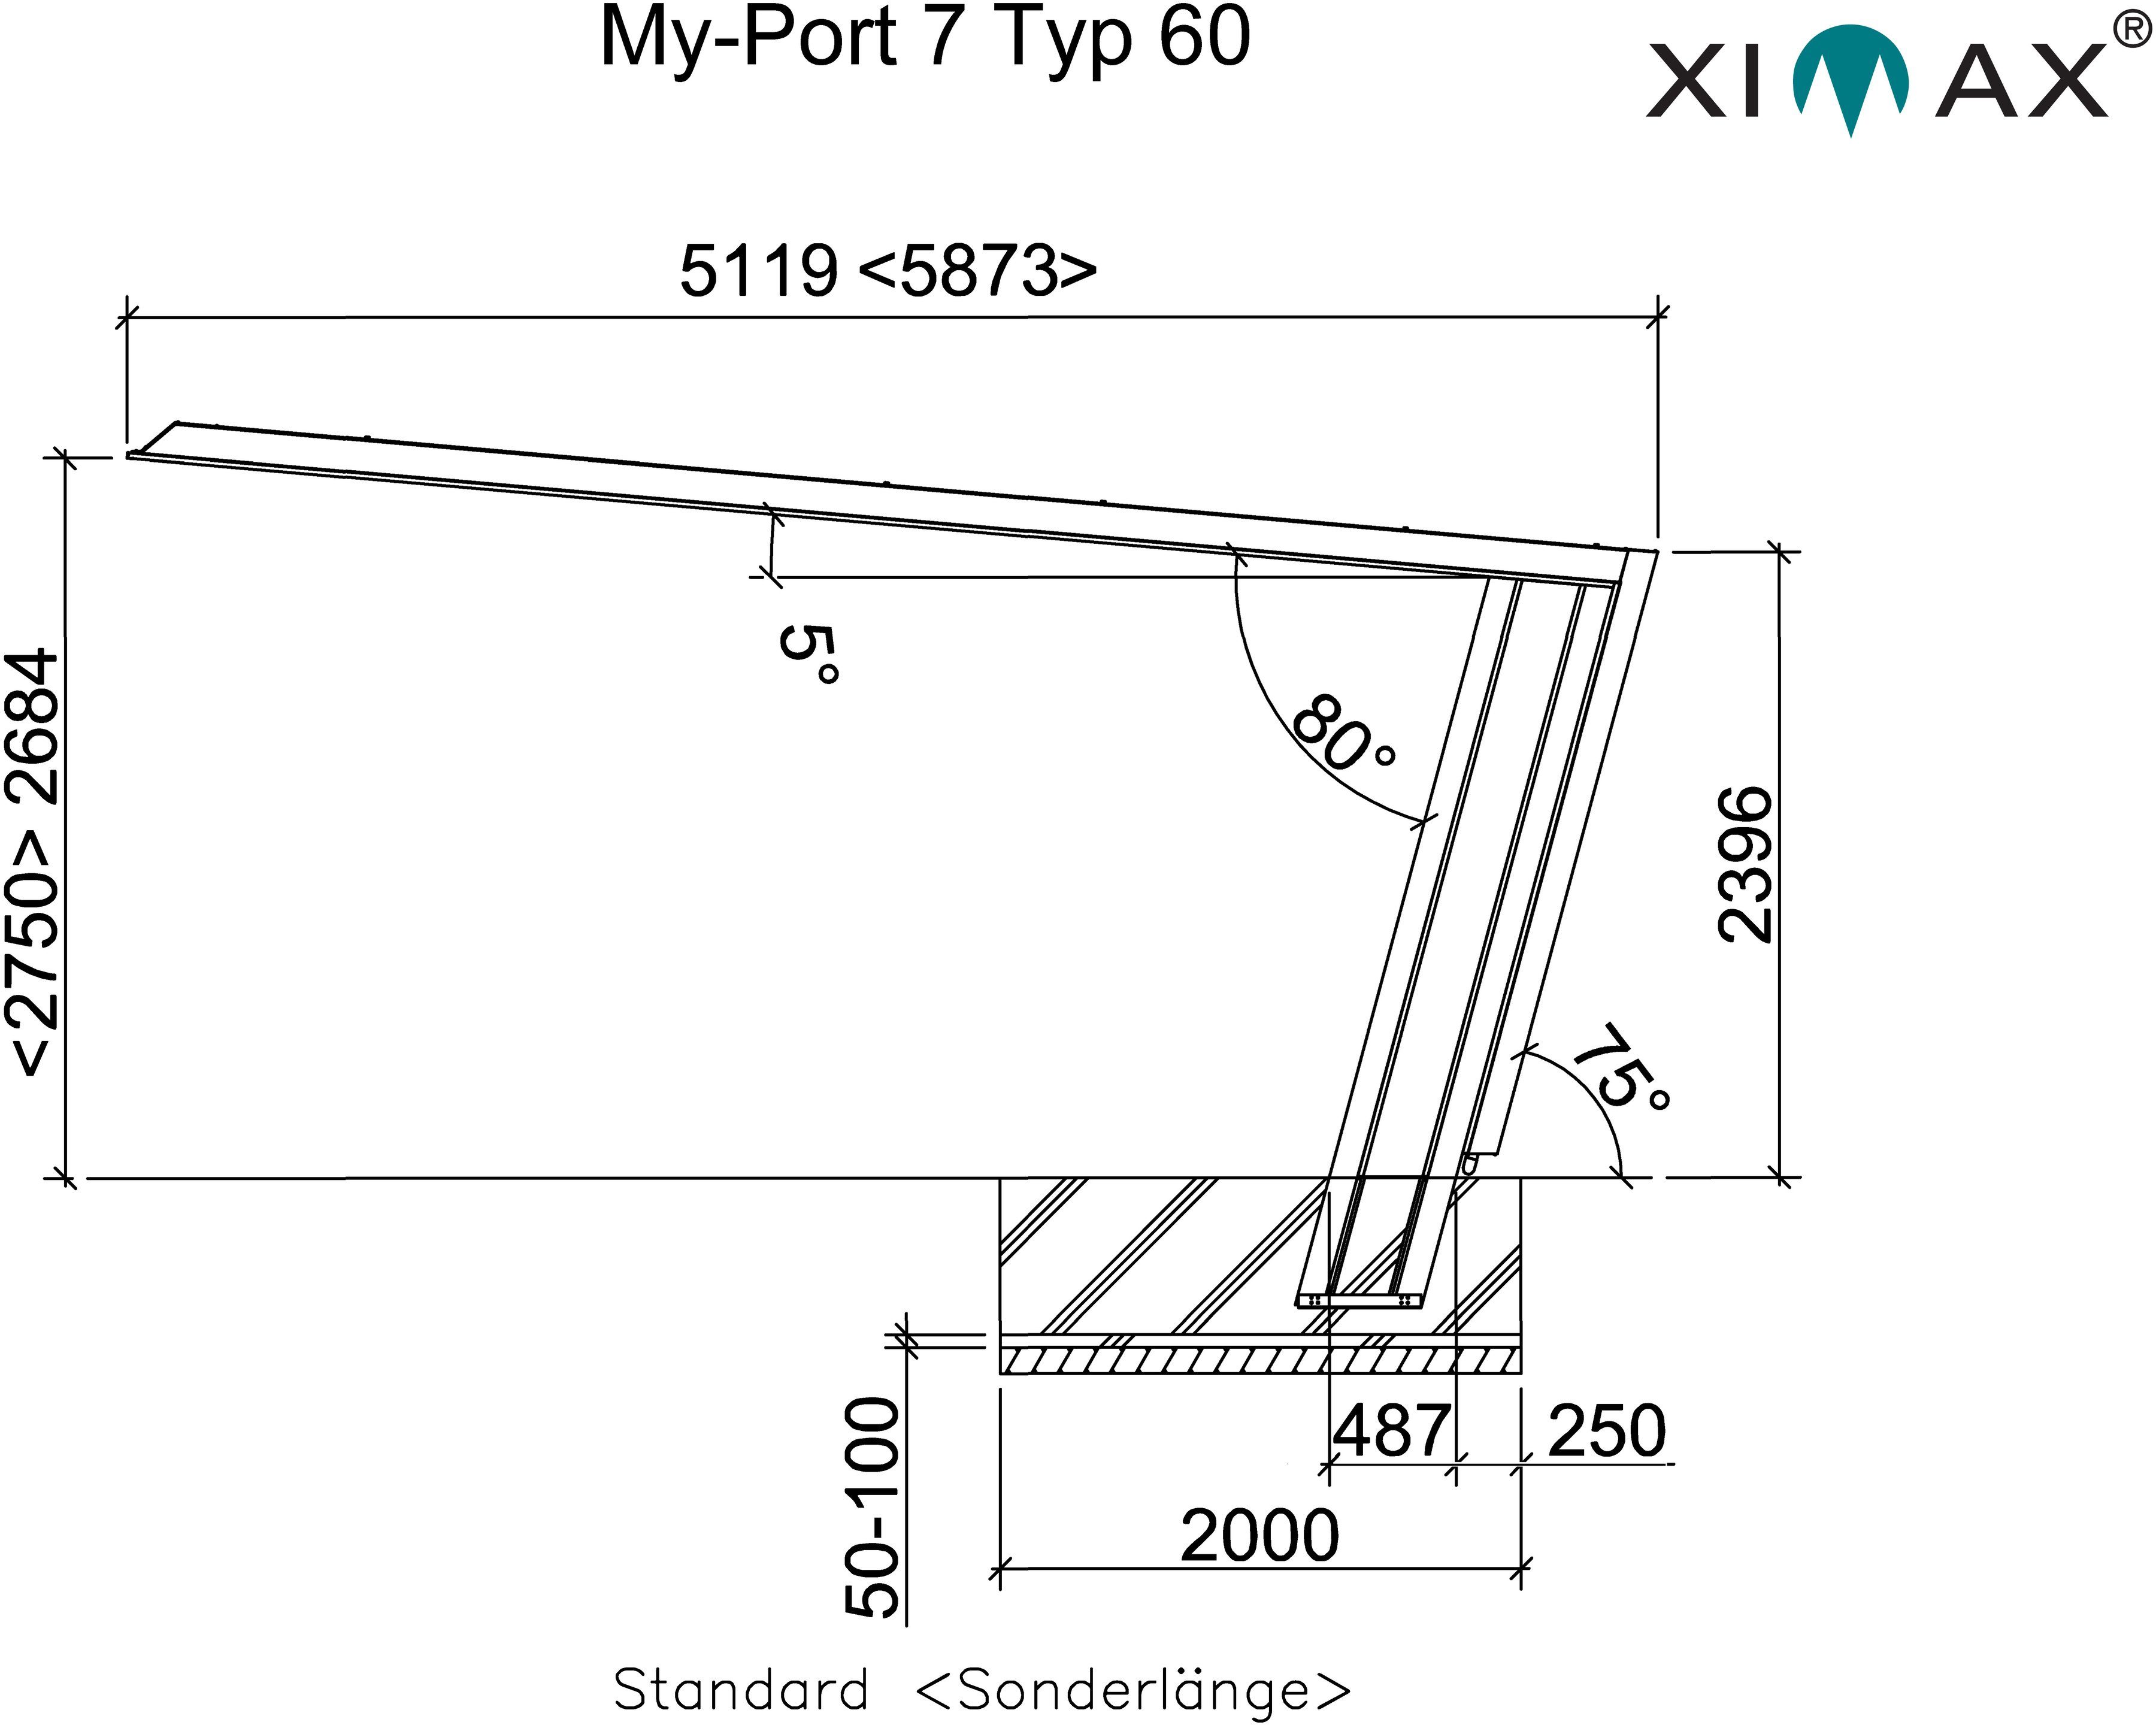 BxT: My-Port Typ Einfahrtshöhe, Aluminium, Typ 2751 220 7 Standard, cm, Einzelcarport cm Edelstahl-Look/schwarz 60 Ximax 269x512